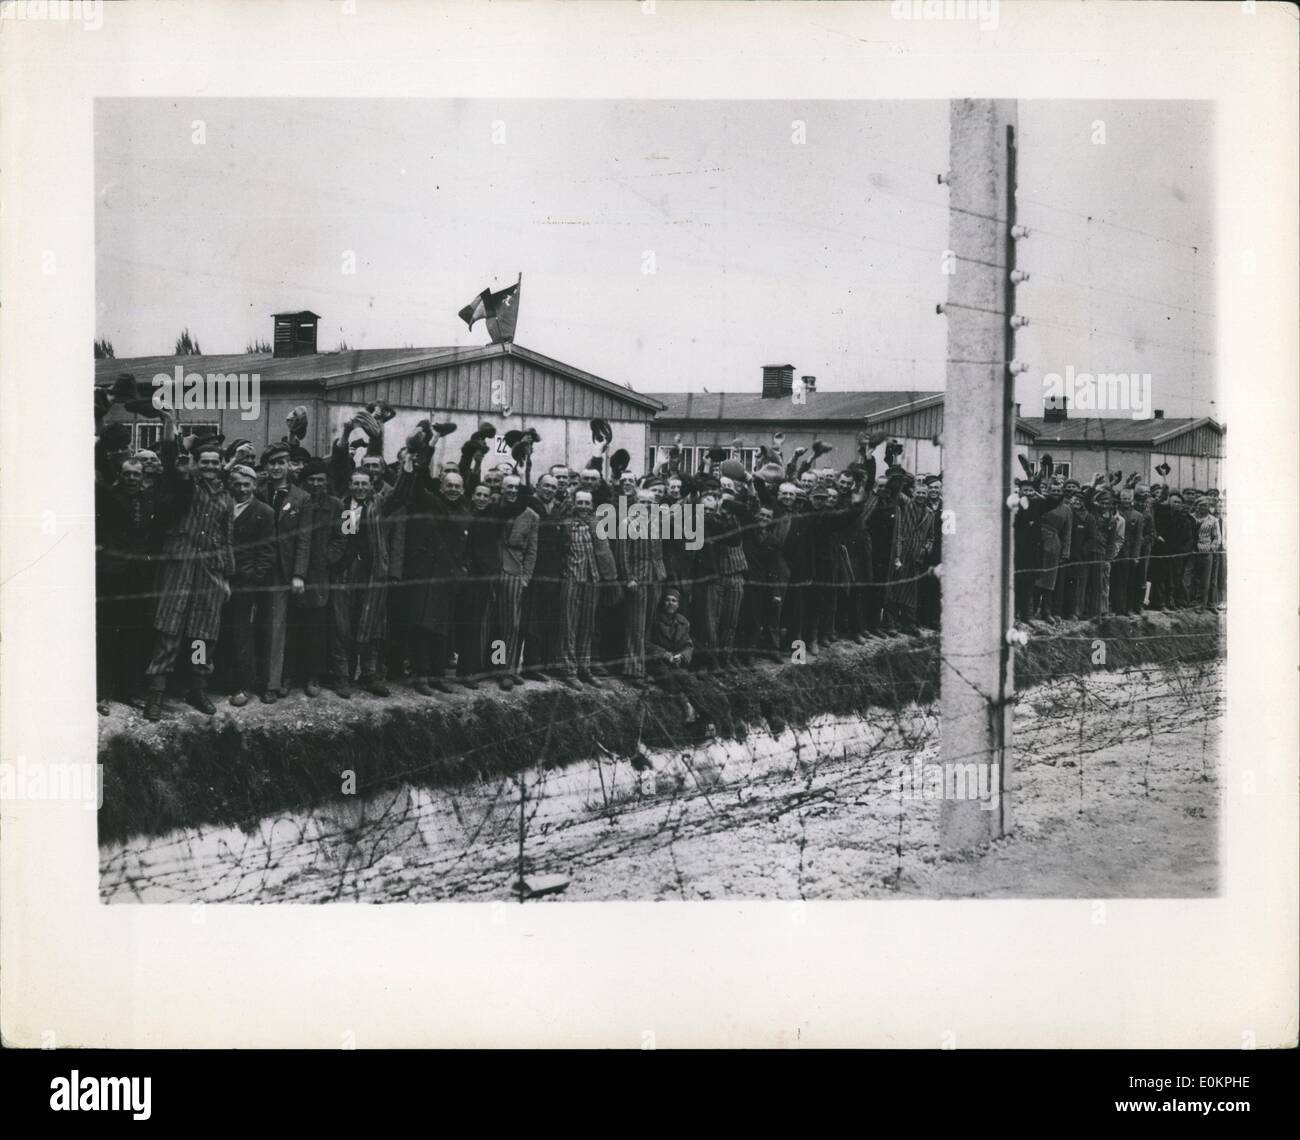 Mai 05, 1945 - WW II Ger(Inv) Camp-Dachau Dachu-Con : le plus célèbre de tous les camps de concentration nazis, a toujours été dirigé par des hommes de la 42e div. de Arc-en-ciel de la 7e armée. Des scènes de l'application avaient été témoins de l'horreur par les troupes américaines comme ils sont allés d'un bâtiment à l'autre. Des milliers d'cerpses affamés étaient empilés près de la toiture en attente d'cremating et des milliers de vie sont devenus fous de joie qu'ils ont vu les garçons la pâte dans leur prison de collision. De nombreux prisonniers de taille immédiatement leurs SS torture et les ont tués de jeter leurs corps dans le plus de entourant le campement Banque D'Images